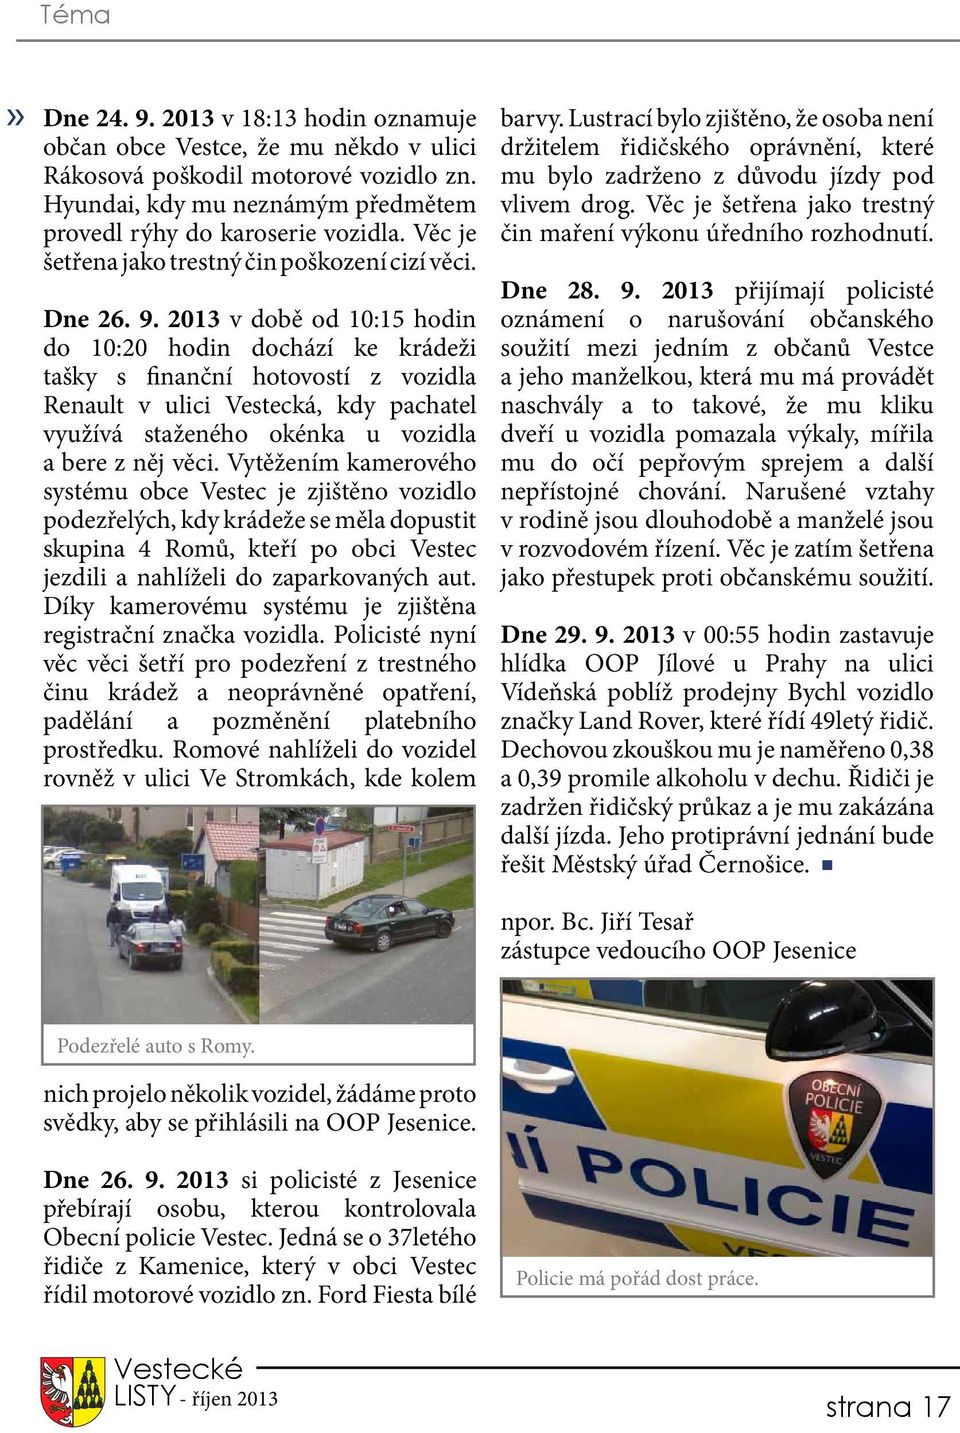 2013 v době od 10:15 hodin do 10:20 hodin dochází ke krádeži tašky s finanční hotovostí z vozidla Renault v ulici Vestecká, kdy pachatel využívá staženého okénka u vozidla a bere z něj věci.